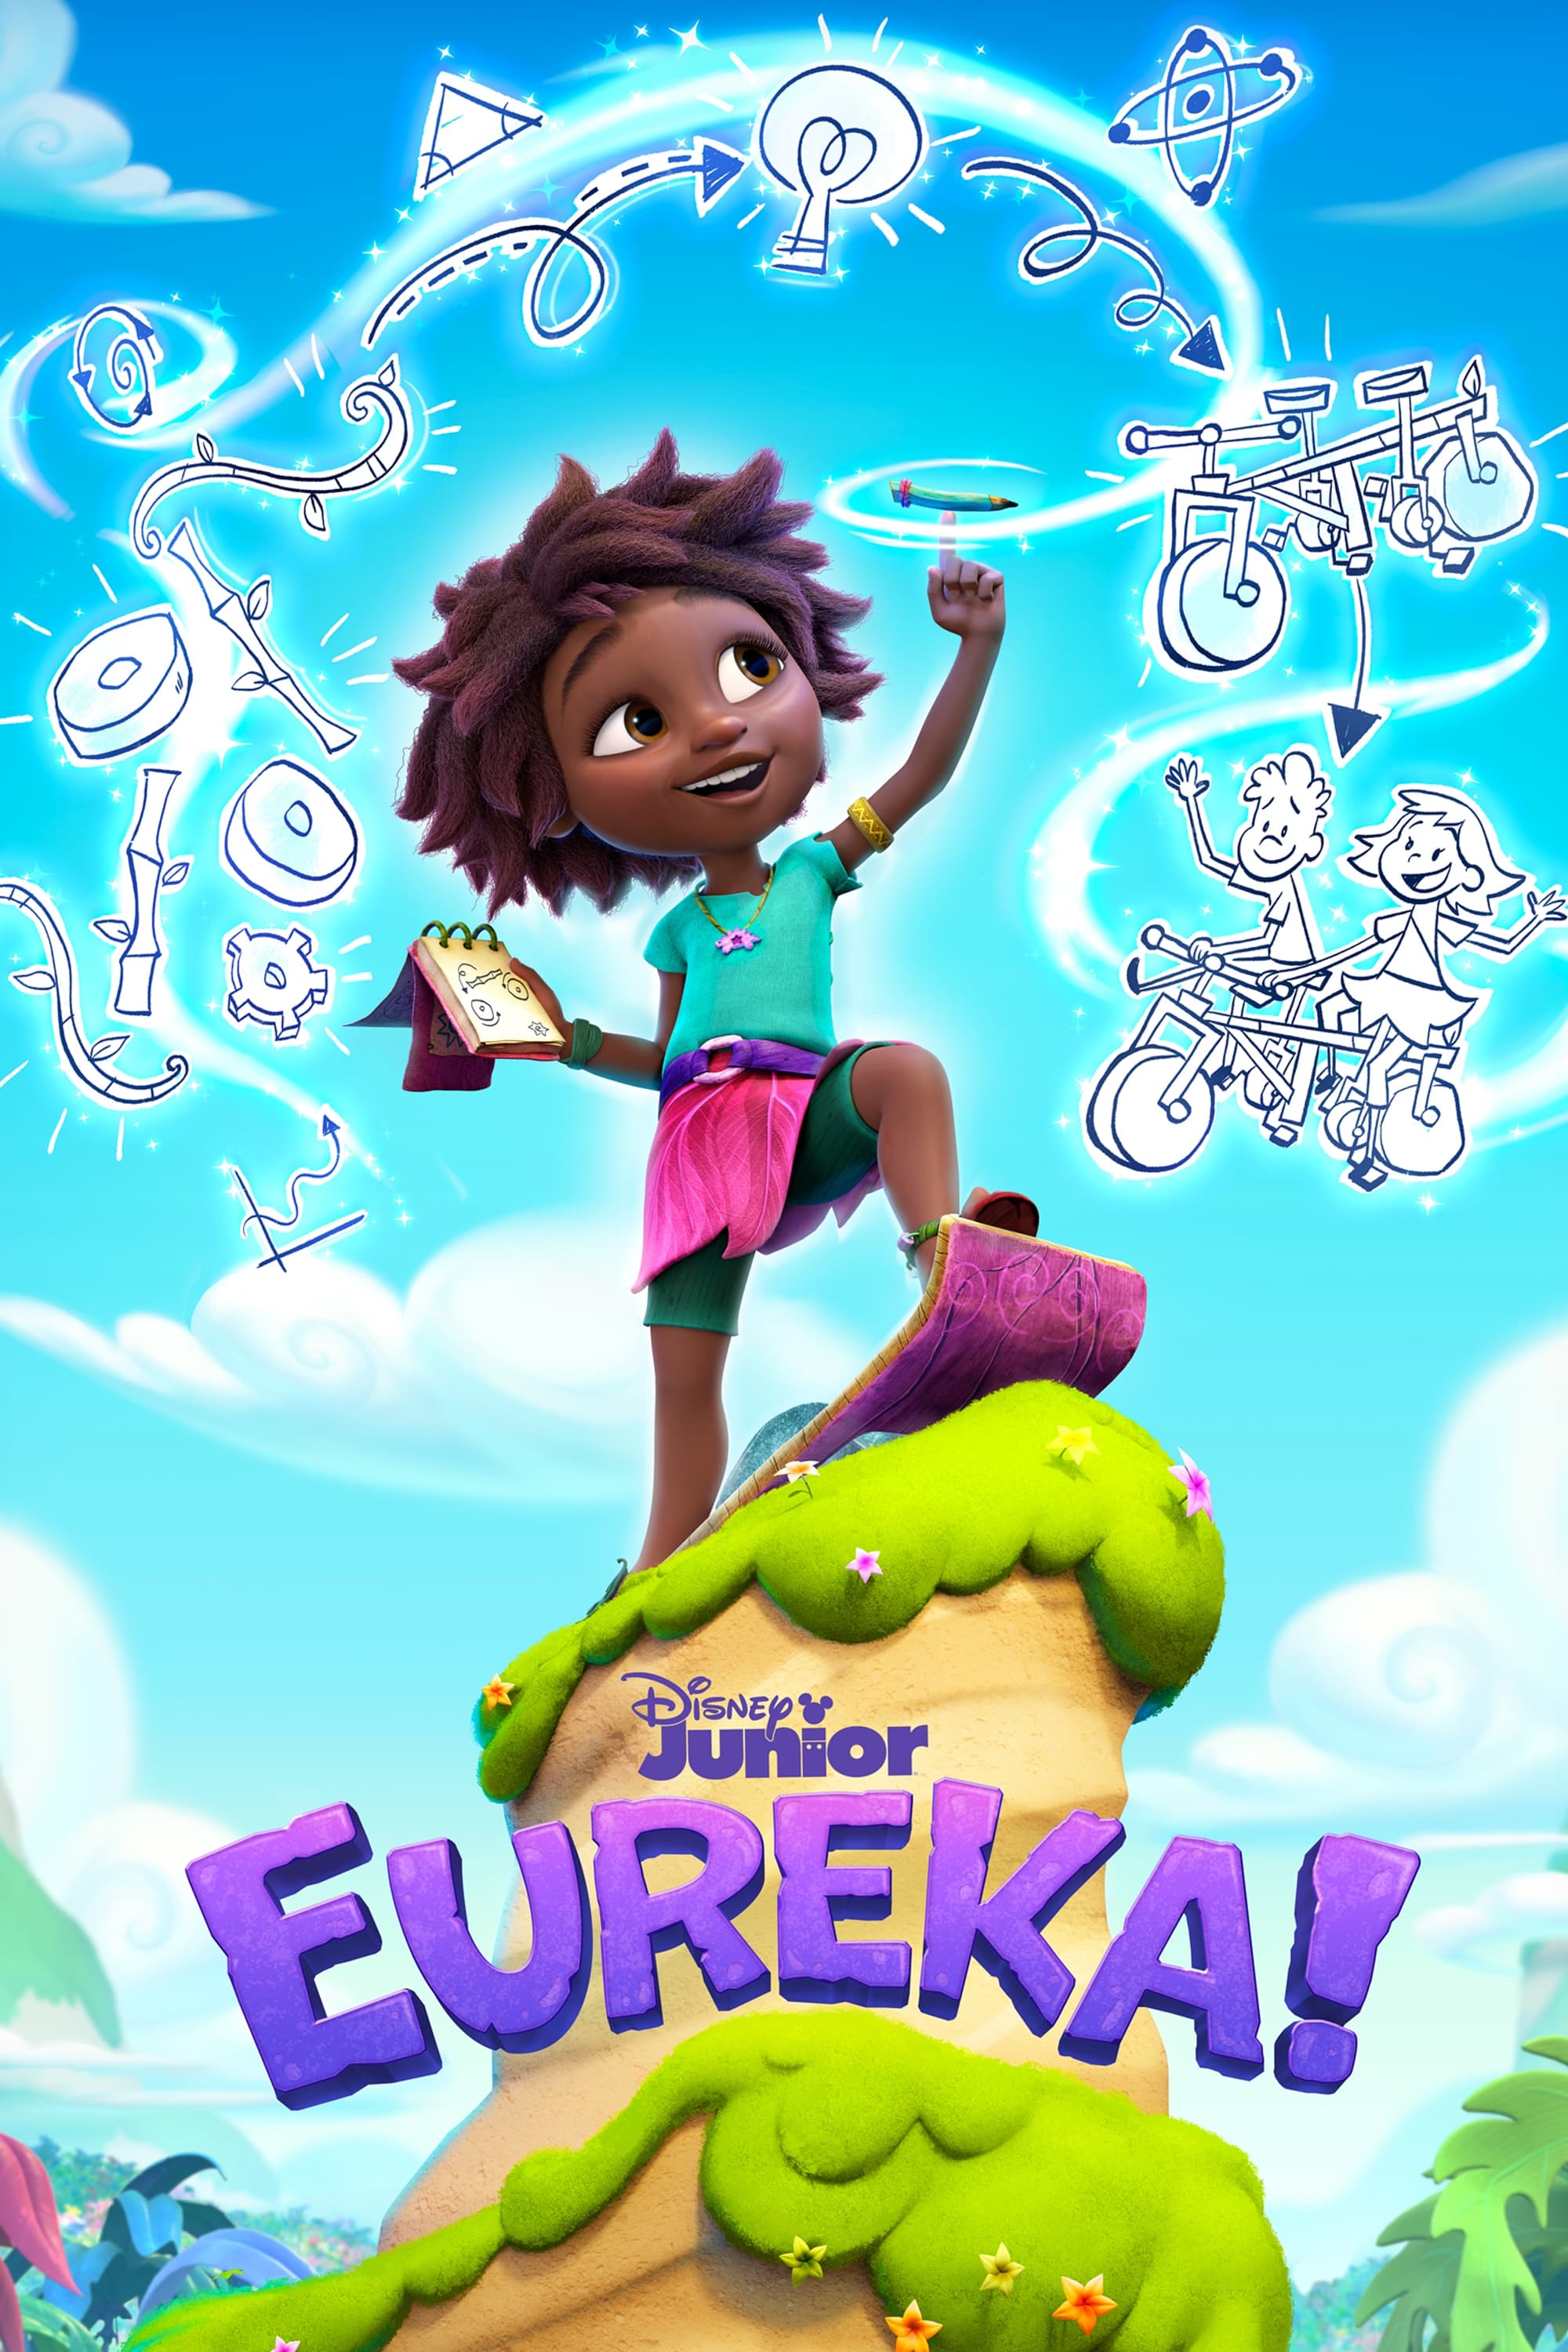 TV ratings for Eureka! in Colombia. Disney Junior TV series